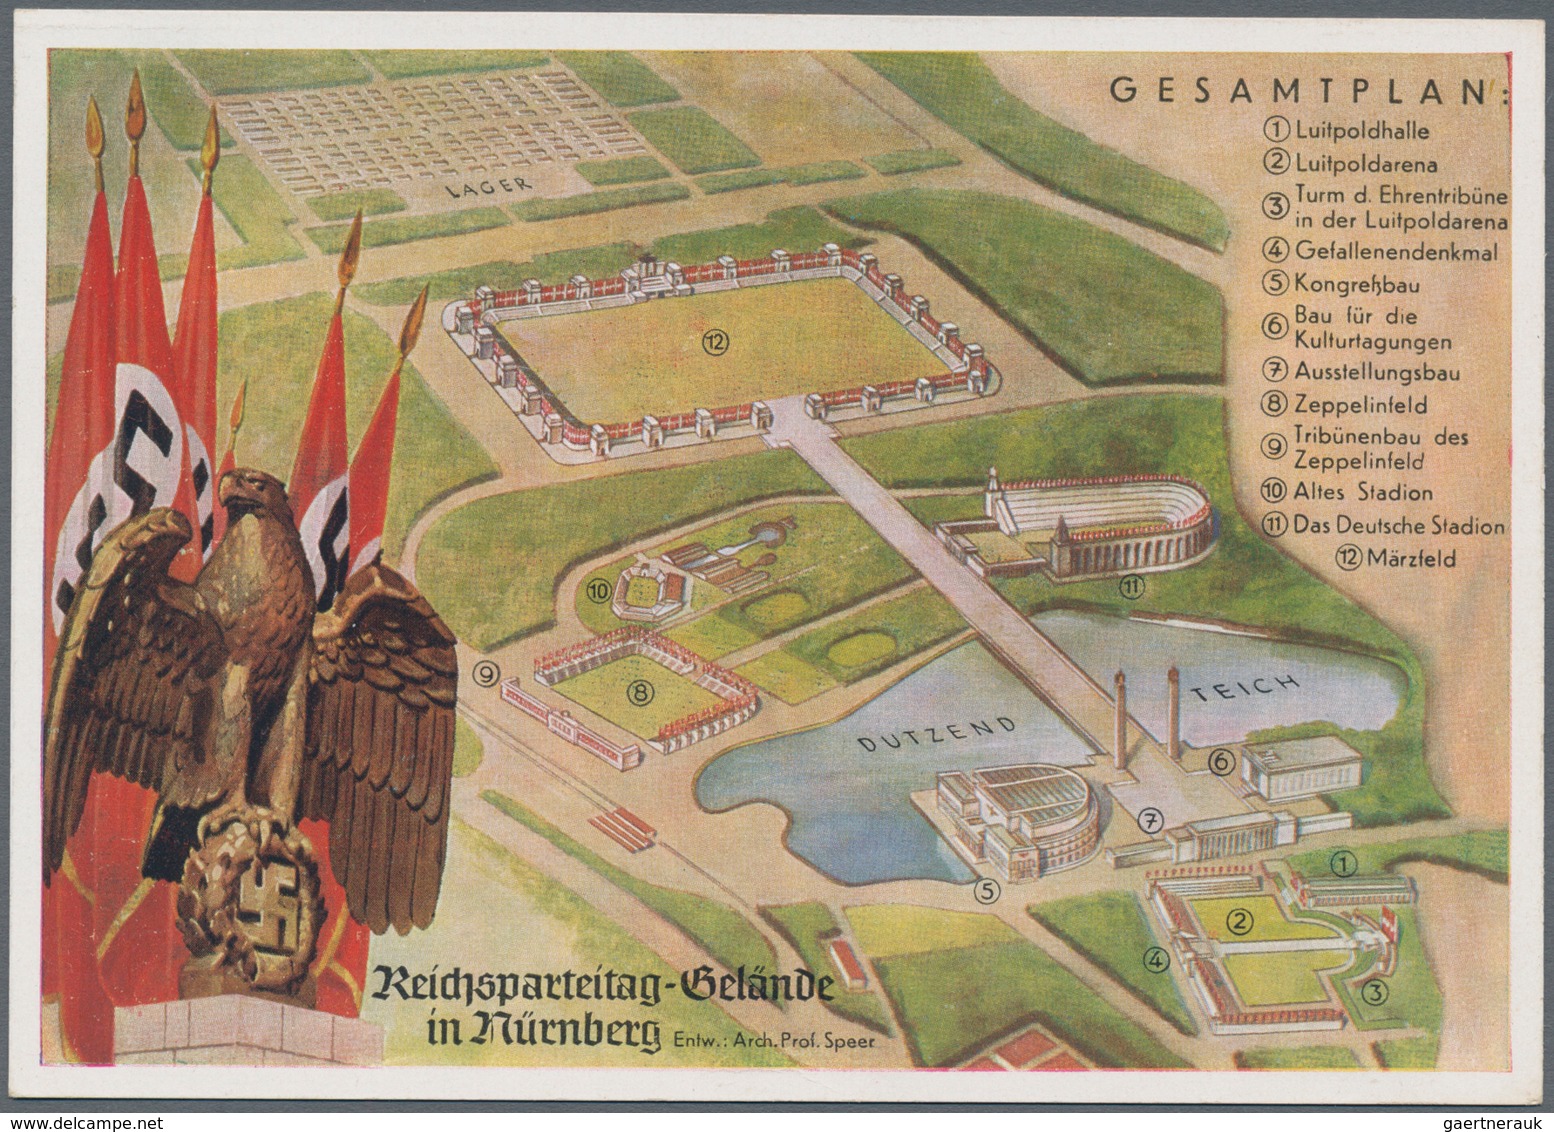 Ansichtskarten: Propaganda: 1937,"REICHSPARTEITAG NÜRNBERG", Übersicht Des Parteitagsgeländes Neben - Parteien & Wahlen